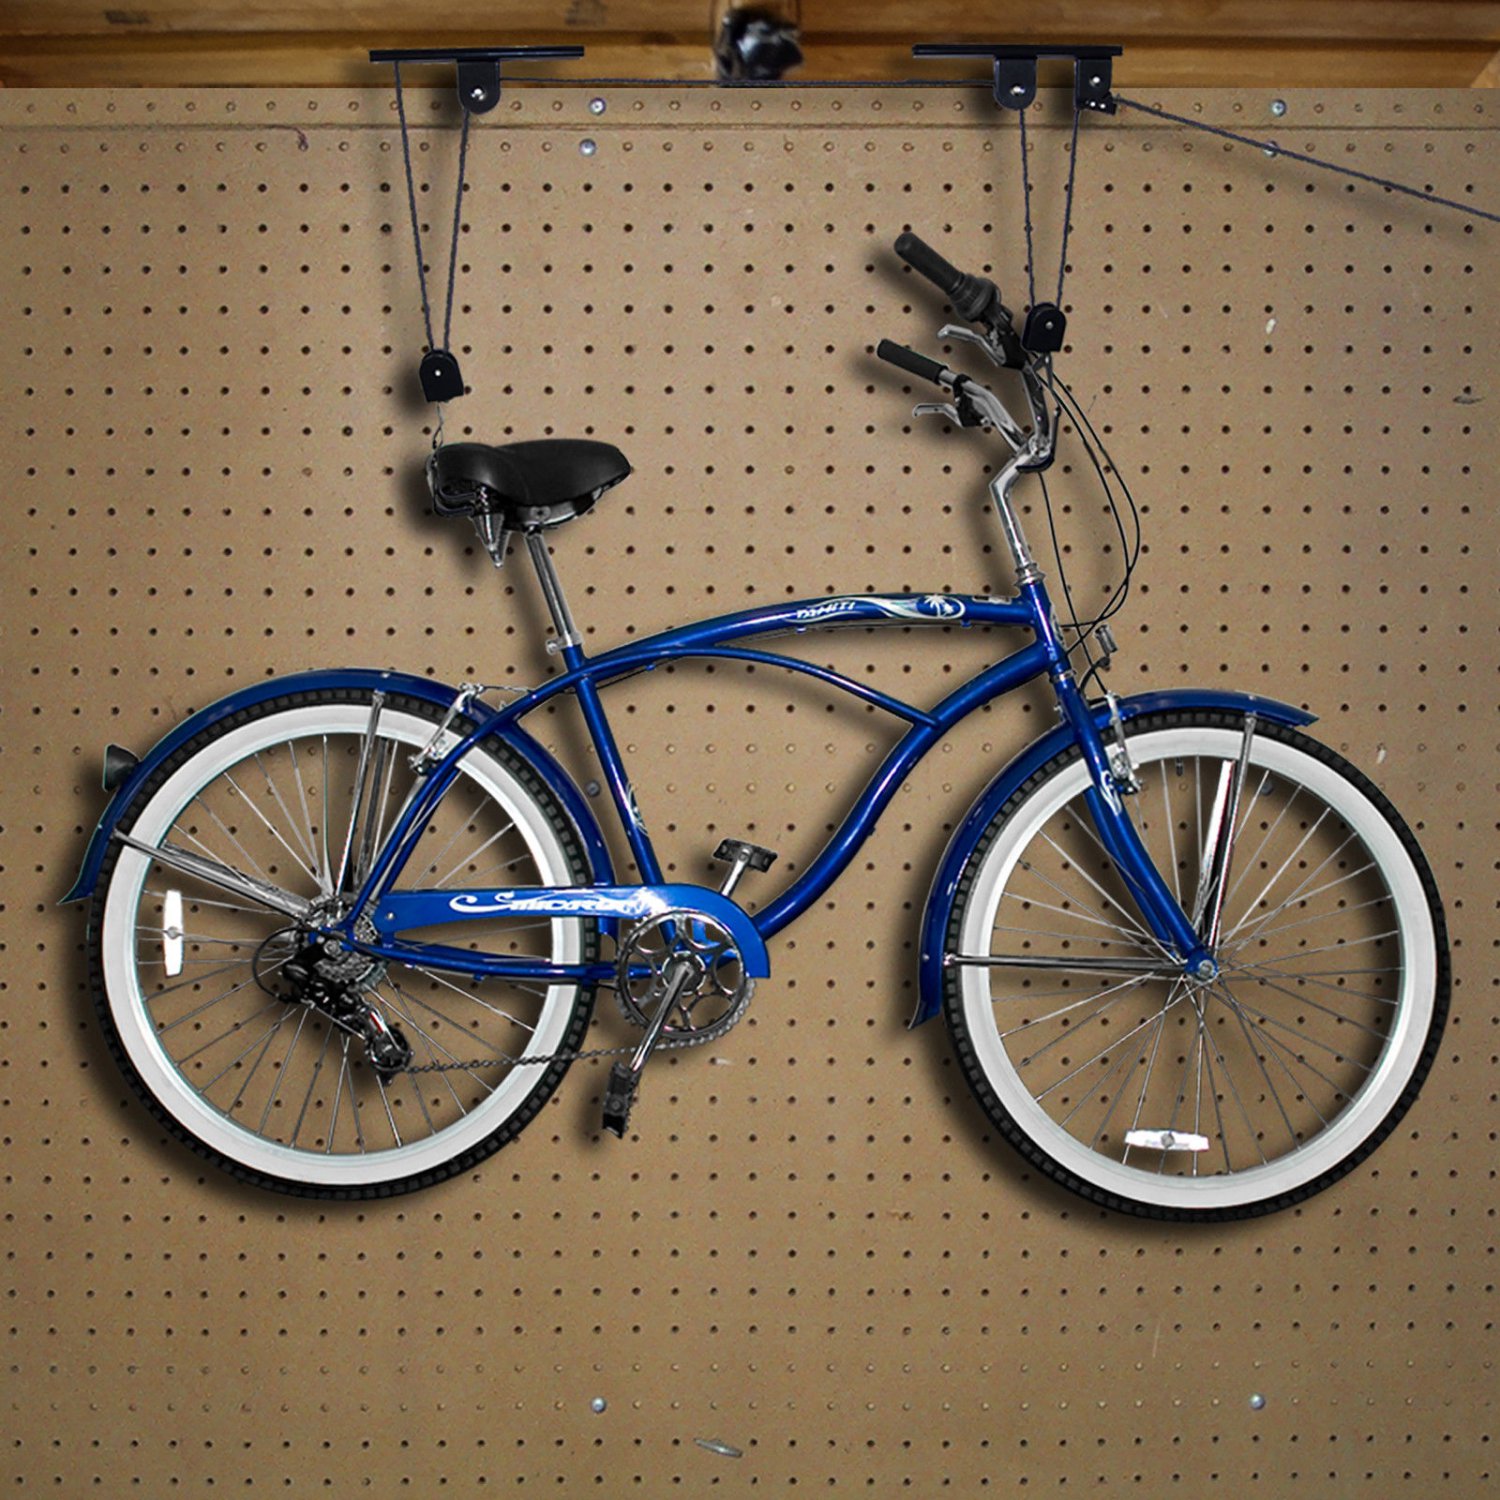 Case of 2 Bike Lifts Hanger Hoist Ceiling Garage Bicycle Puller Mount Storage